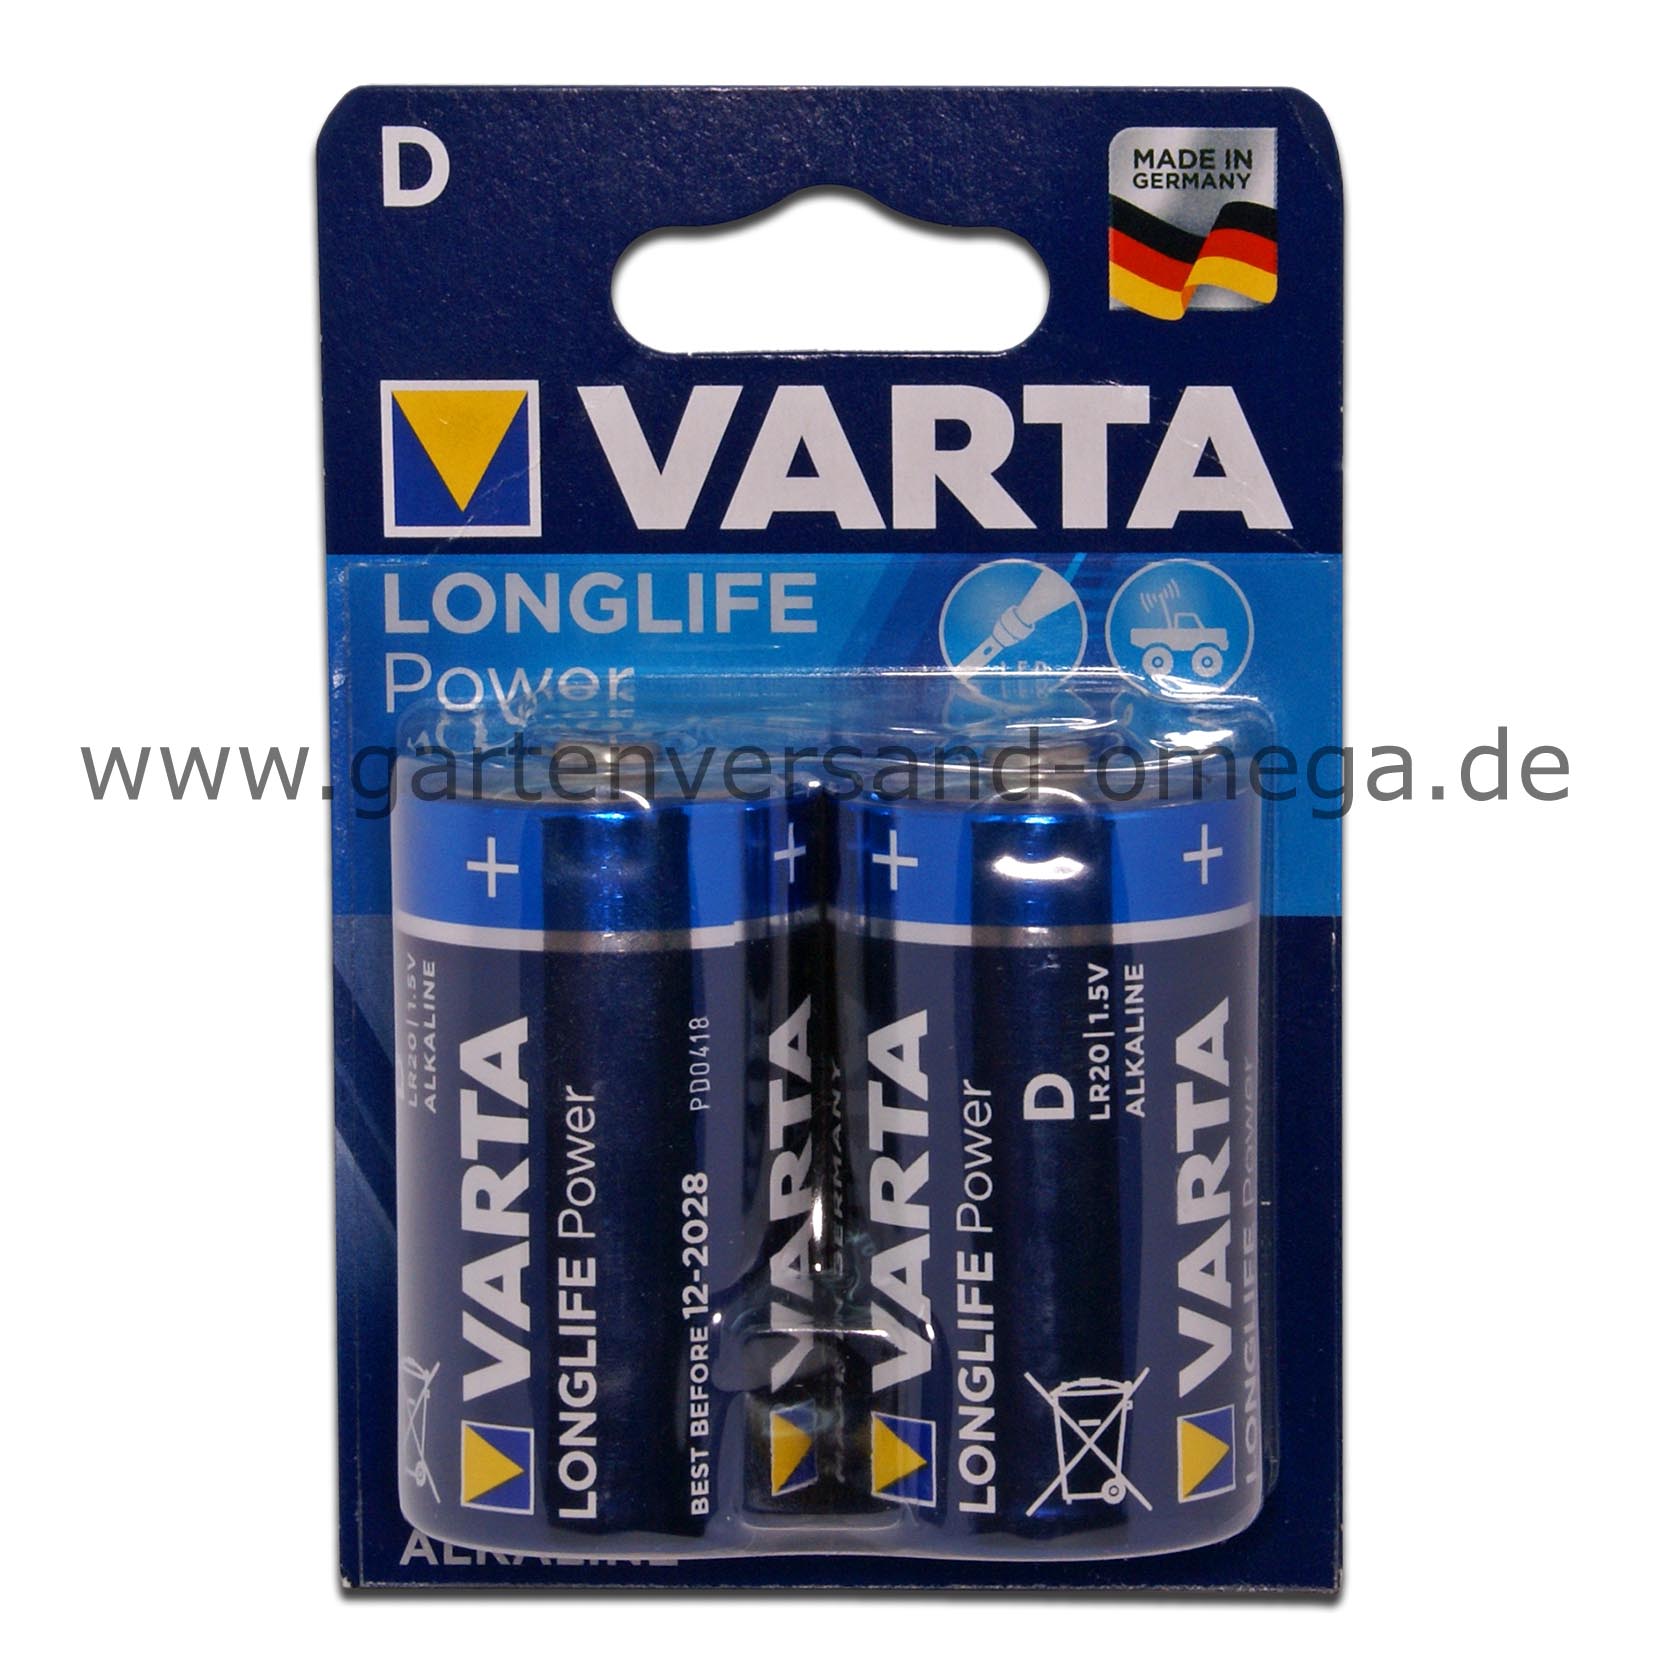 Varta Batterie Longlife Power D Mono - Typ D-Batterie, Monozelle,  Lichterkettenbatterie, Batterie für Weihnachtsbeleuchtung,  Weihnachtsbeleuchtungszubehör, Batterie kaufen, Mono-Batterie, LR20,  Batterie günstig